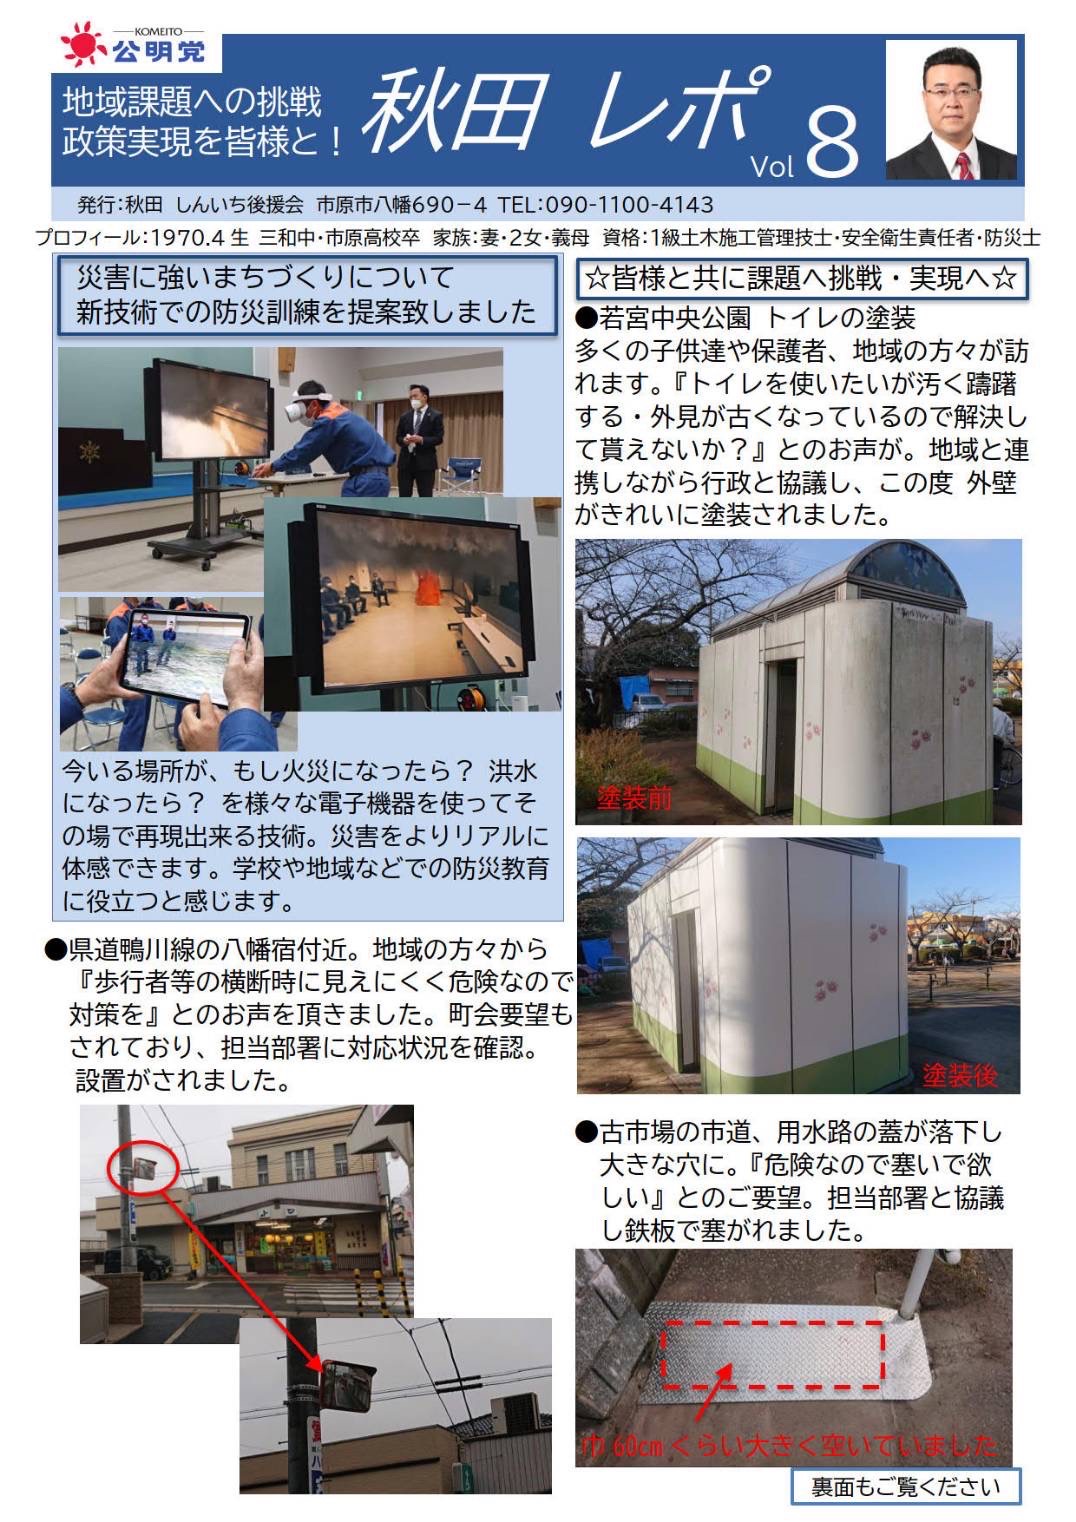 秋田信一後援会より発行されたレポートのモーダル専用画像